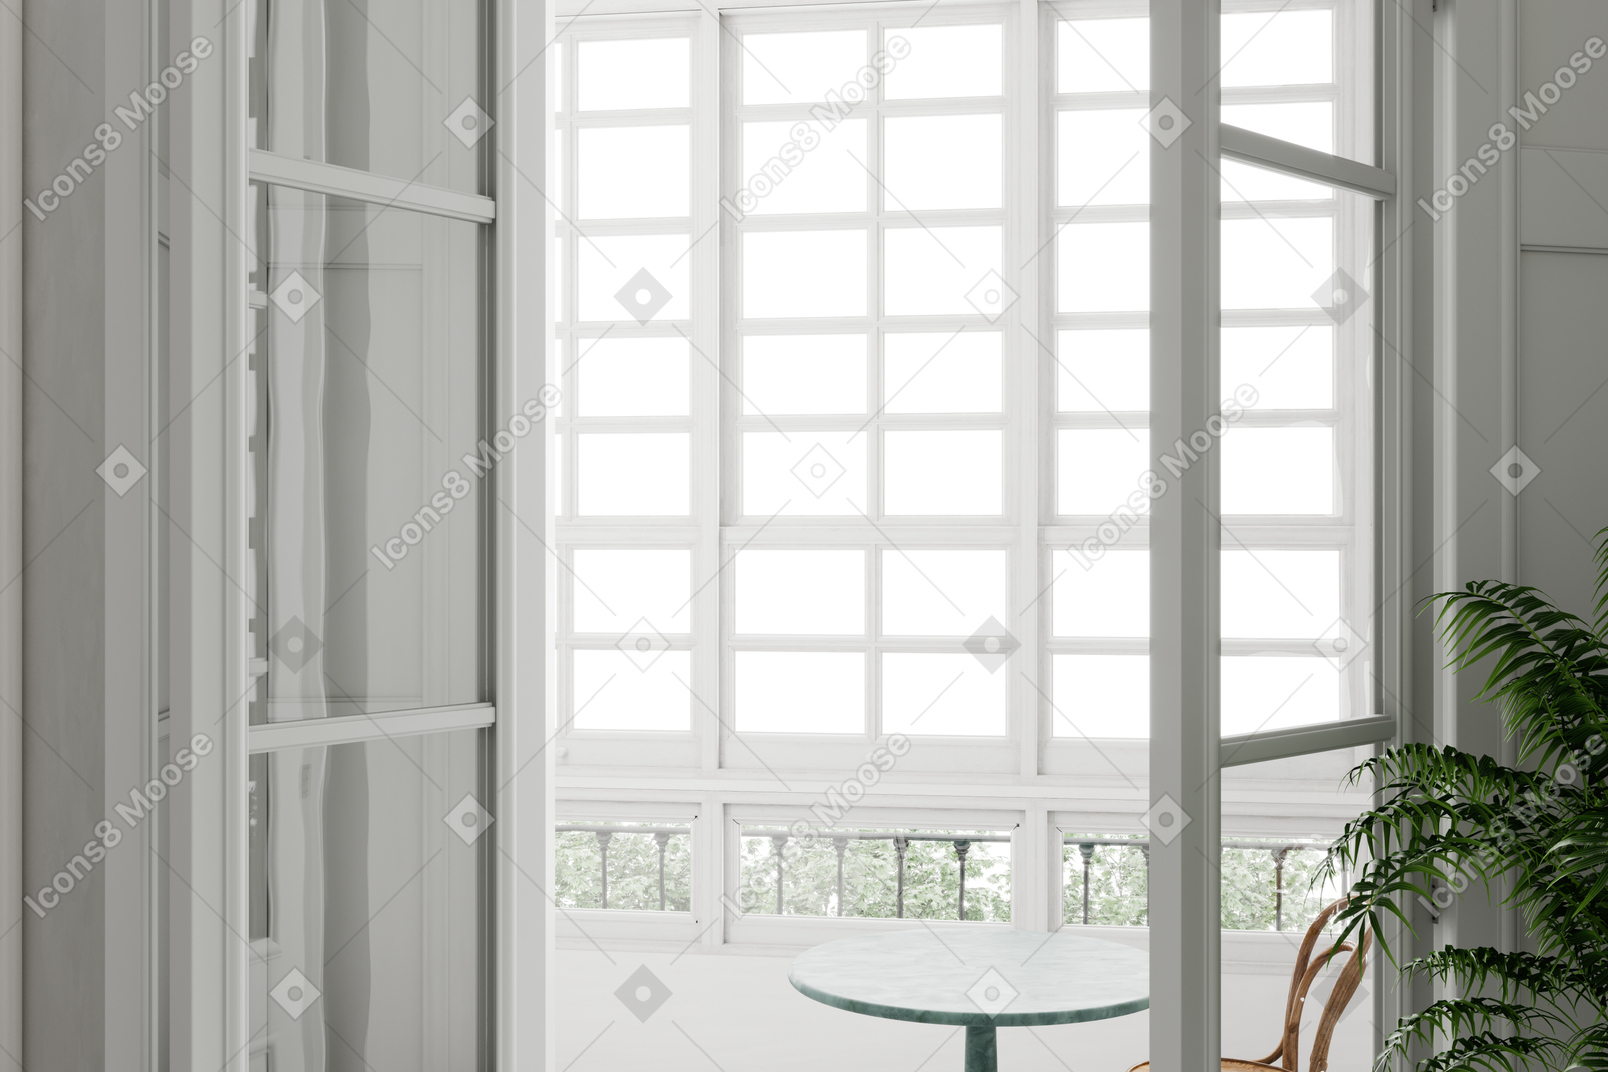 Застекленный балкон с квадратными стеклопакетами